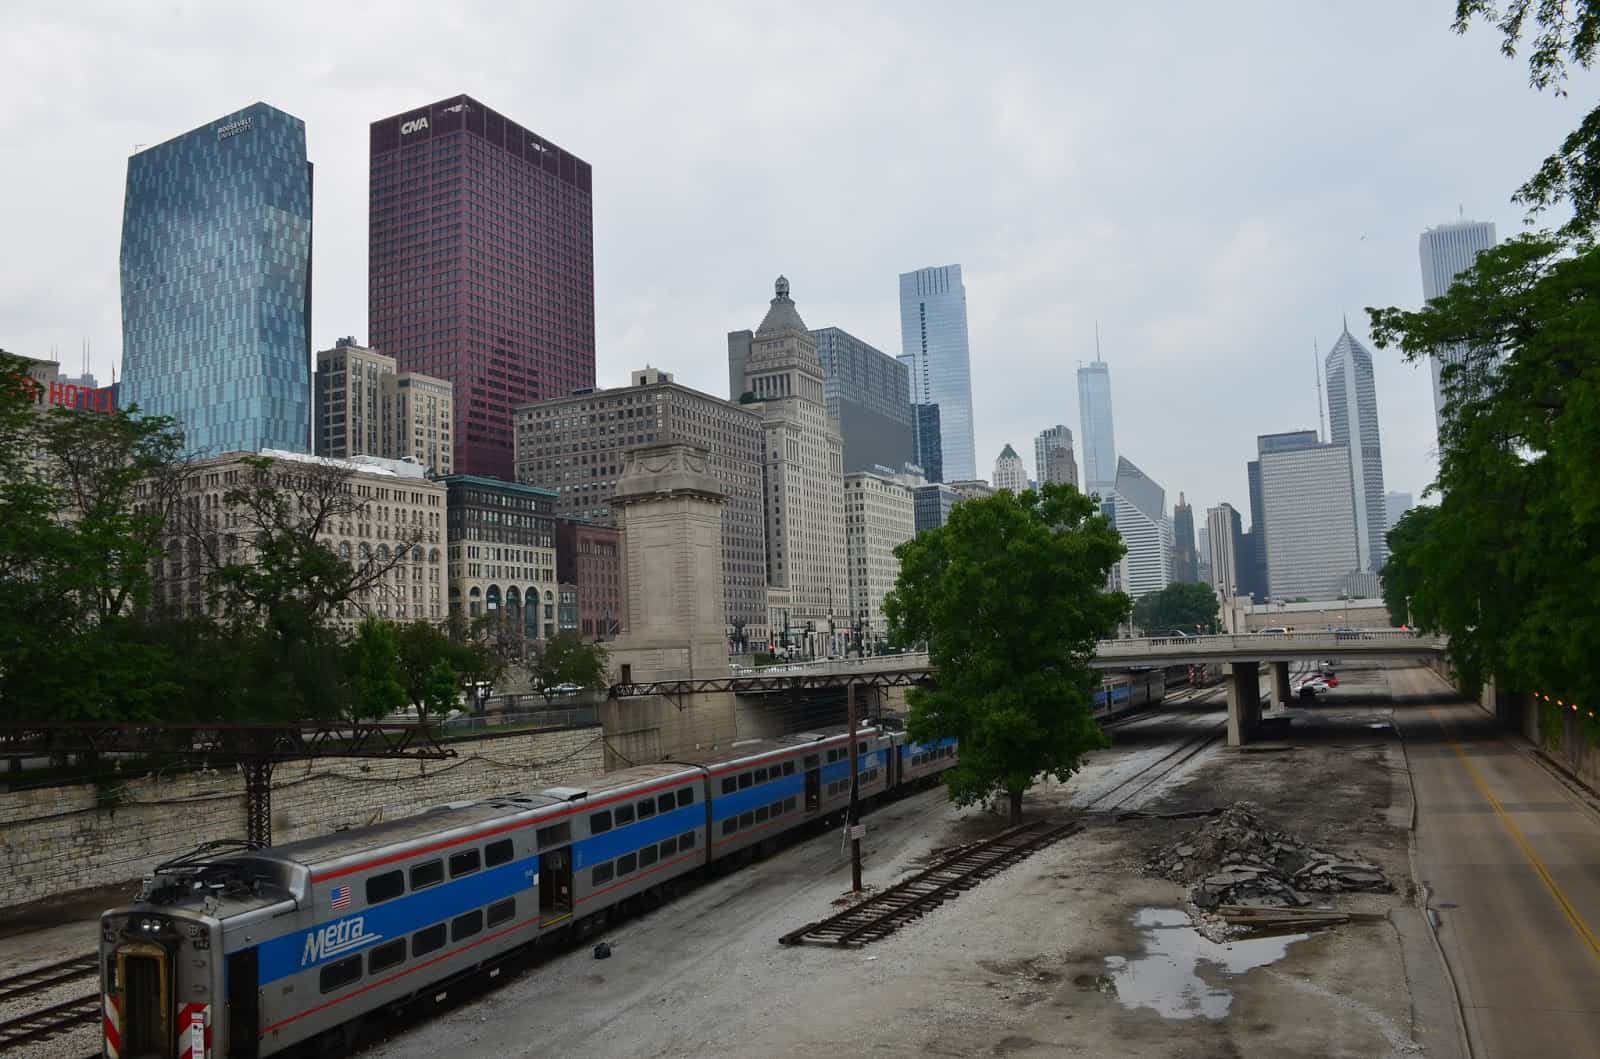 Railroad tracks in Grant Park Chicago